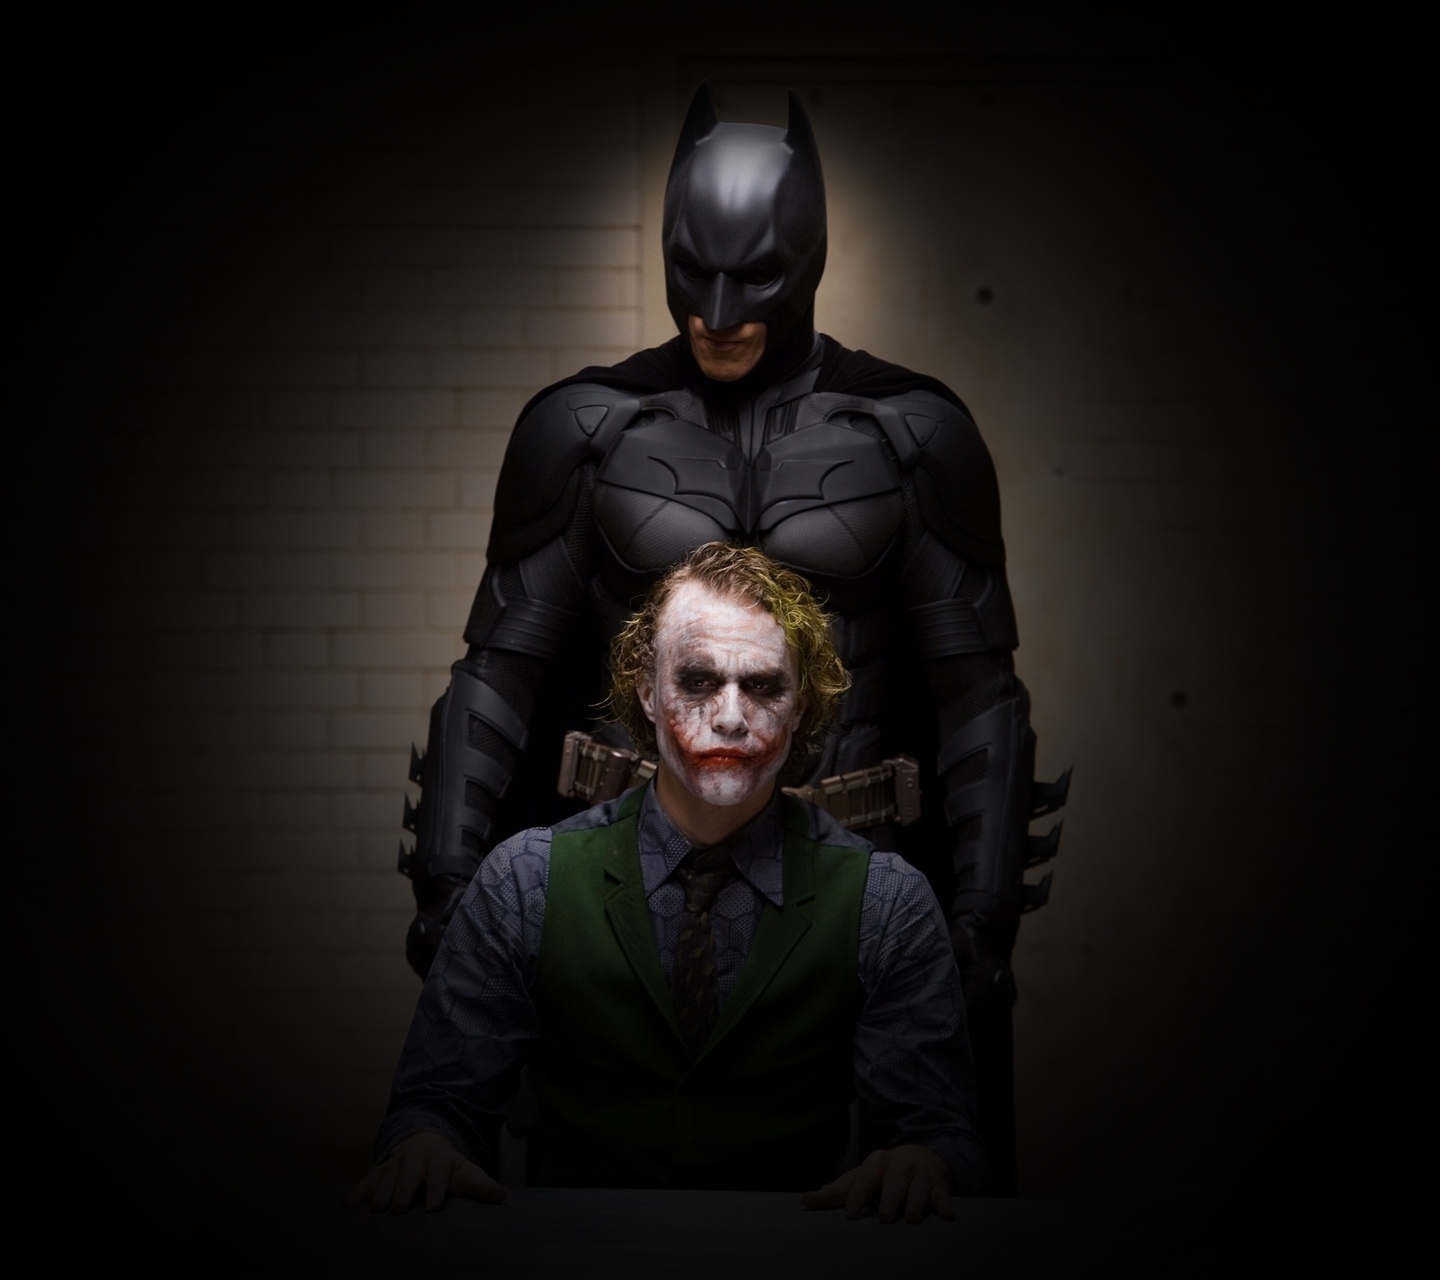 Batman Vs Joker HD Wallpaper Image Amp Pictures Becuo